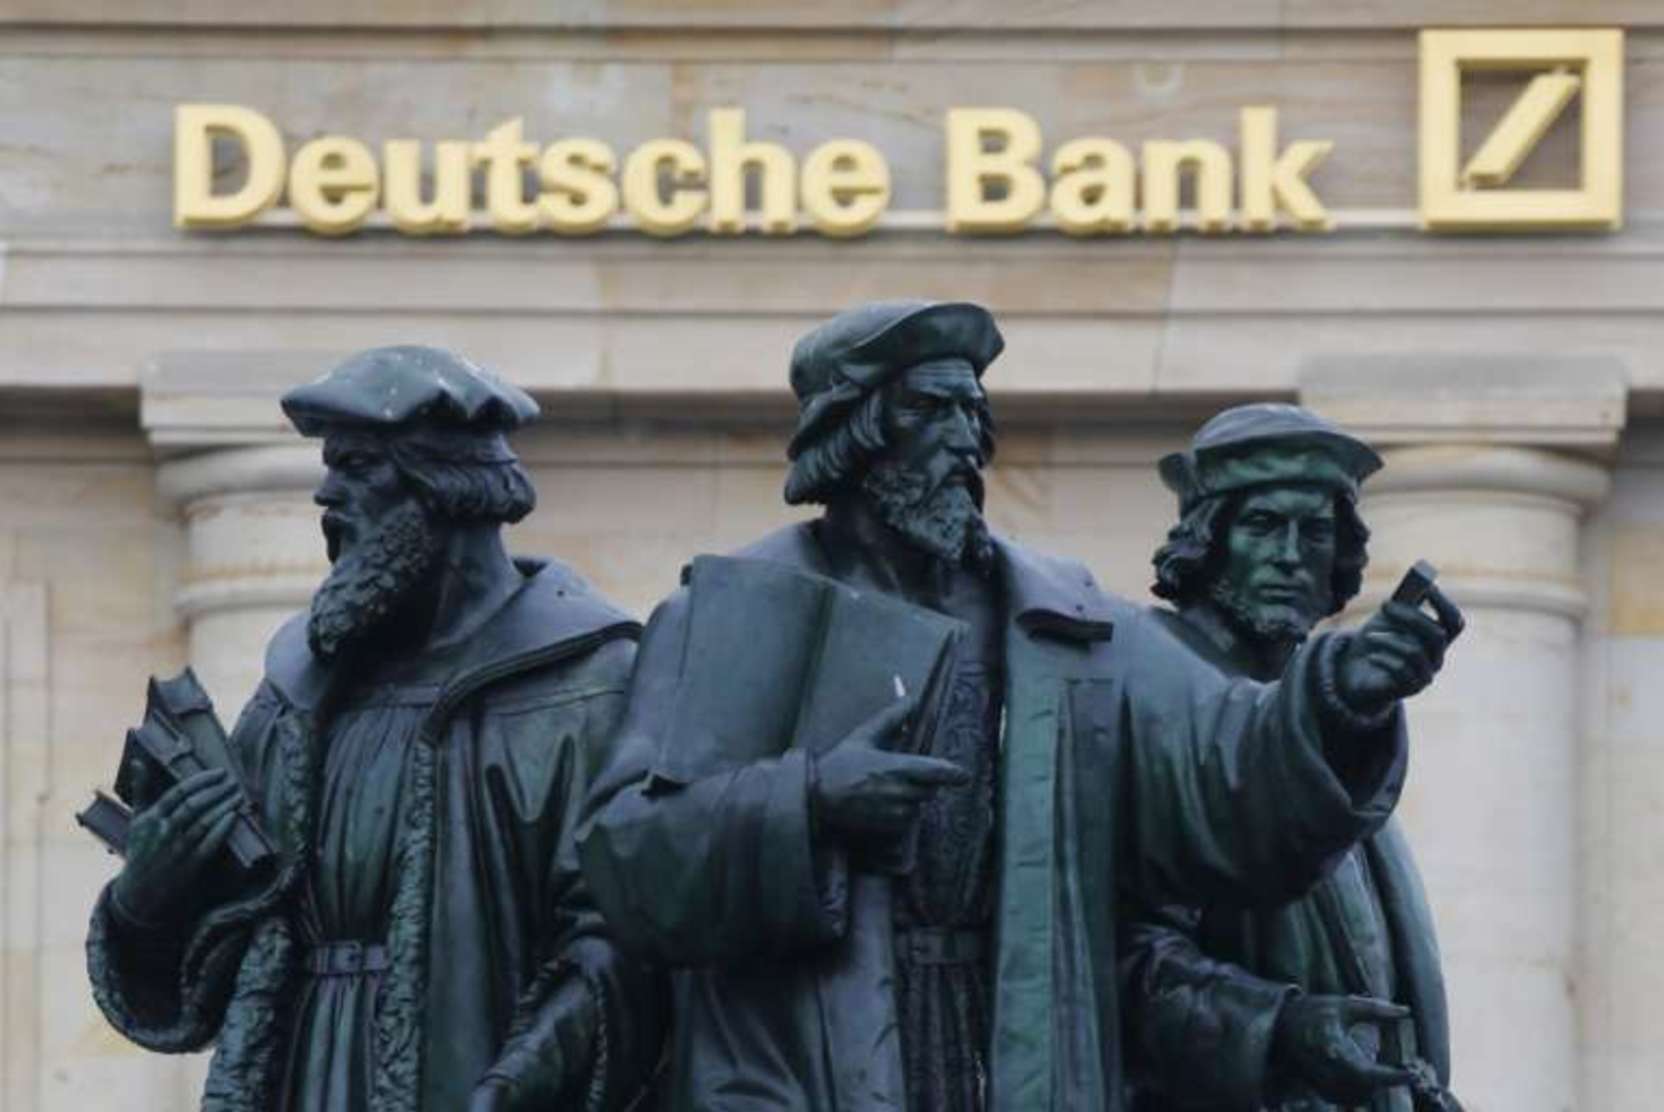   deutsche bank     it- 